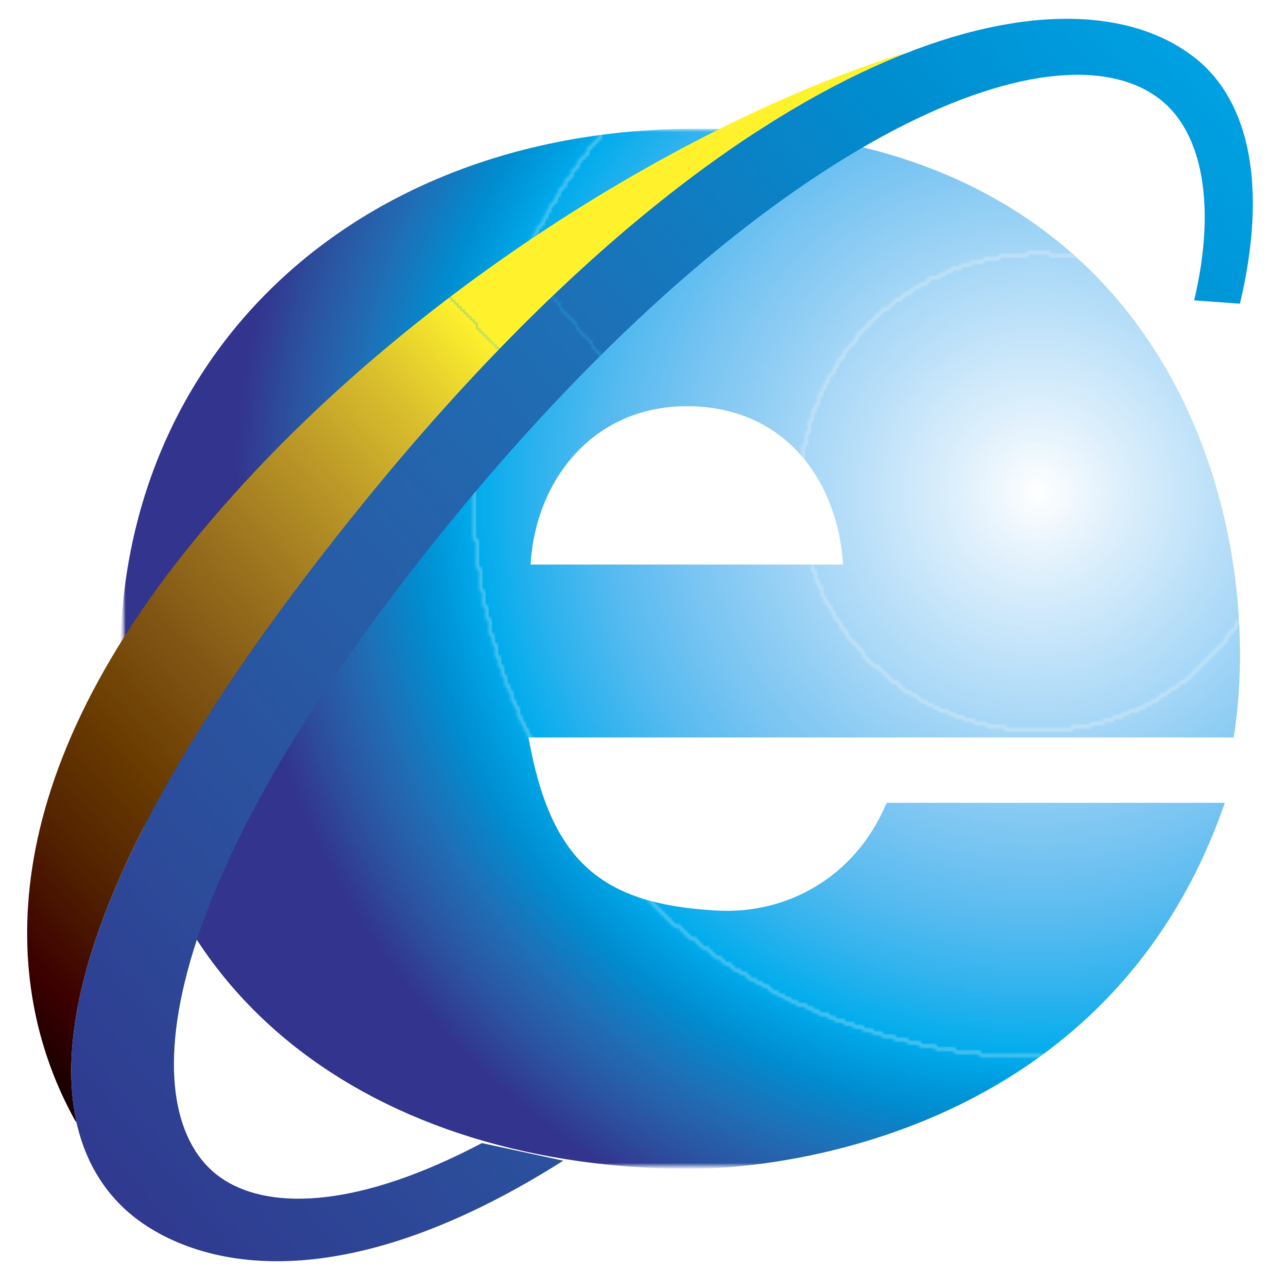 Internet Explorer PNG HD Image